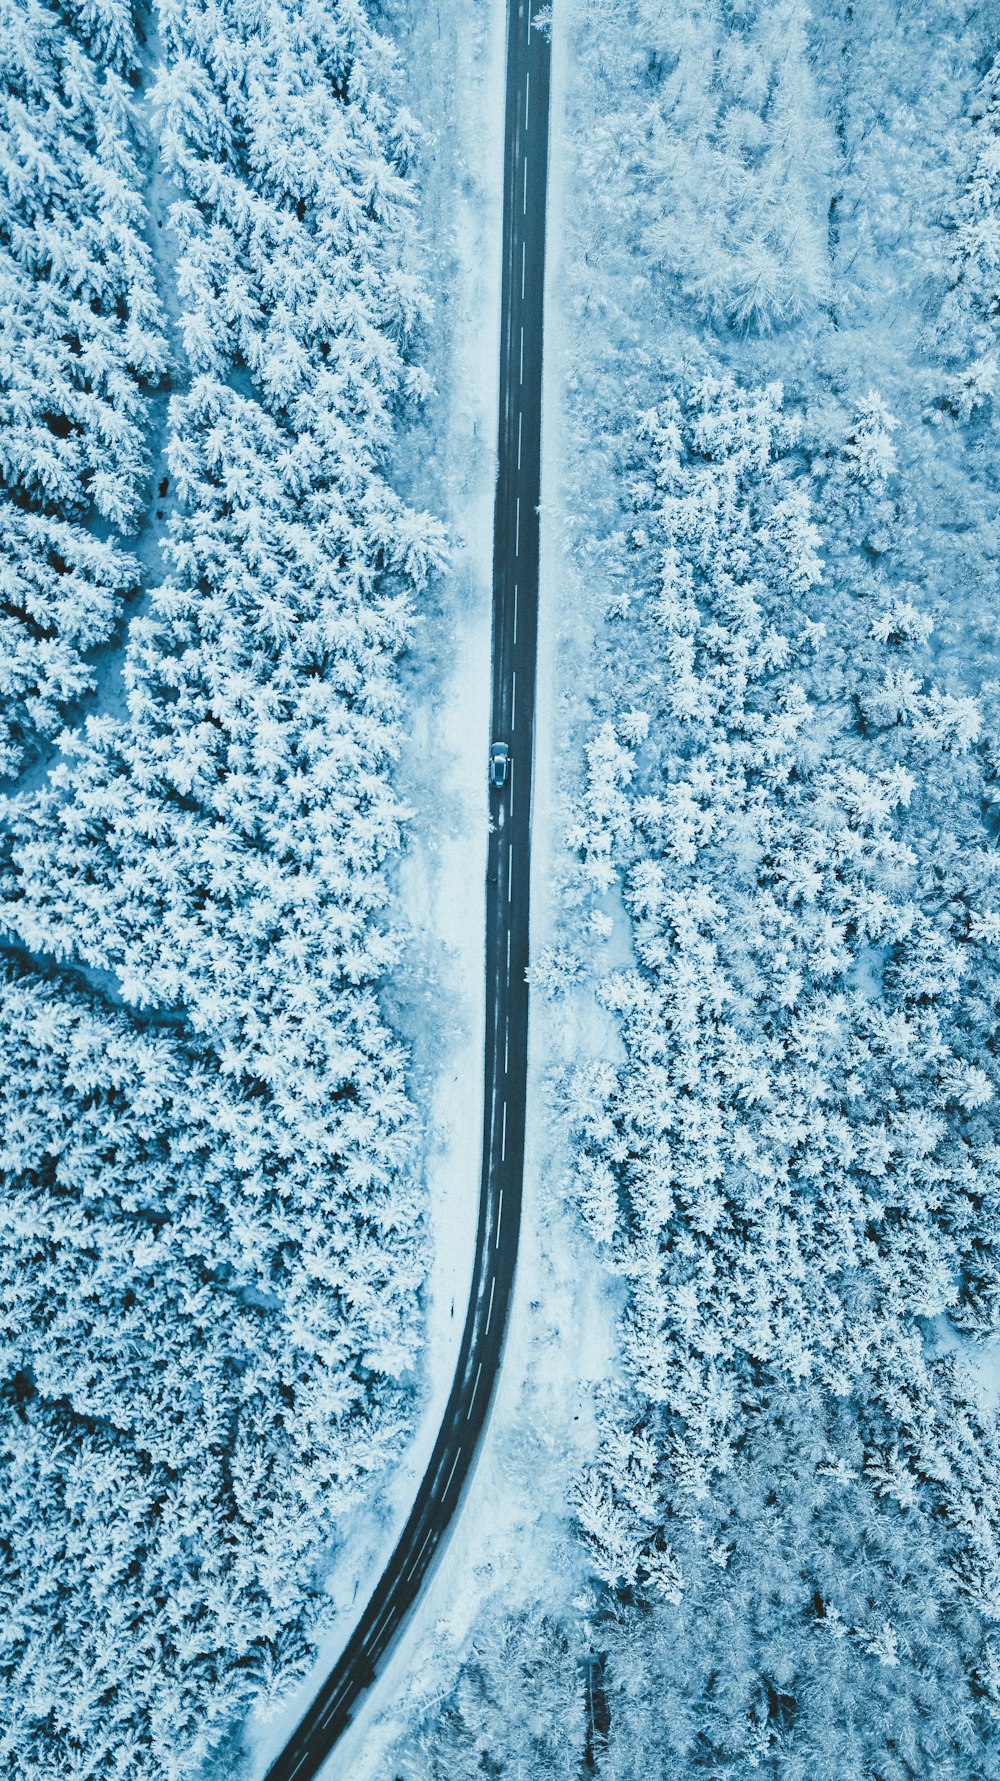 estrada cinzenta cercada por árvores cobertas de neve